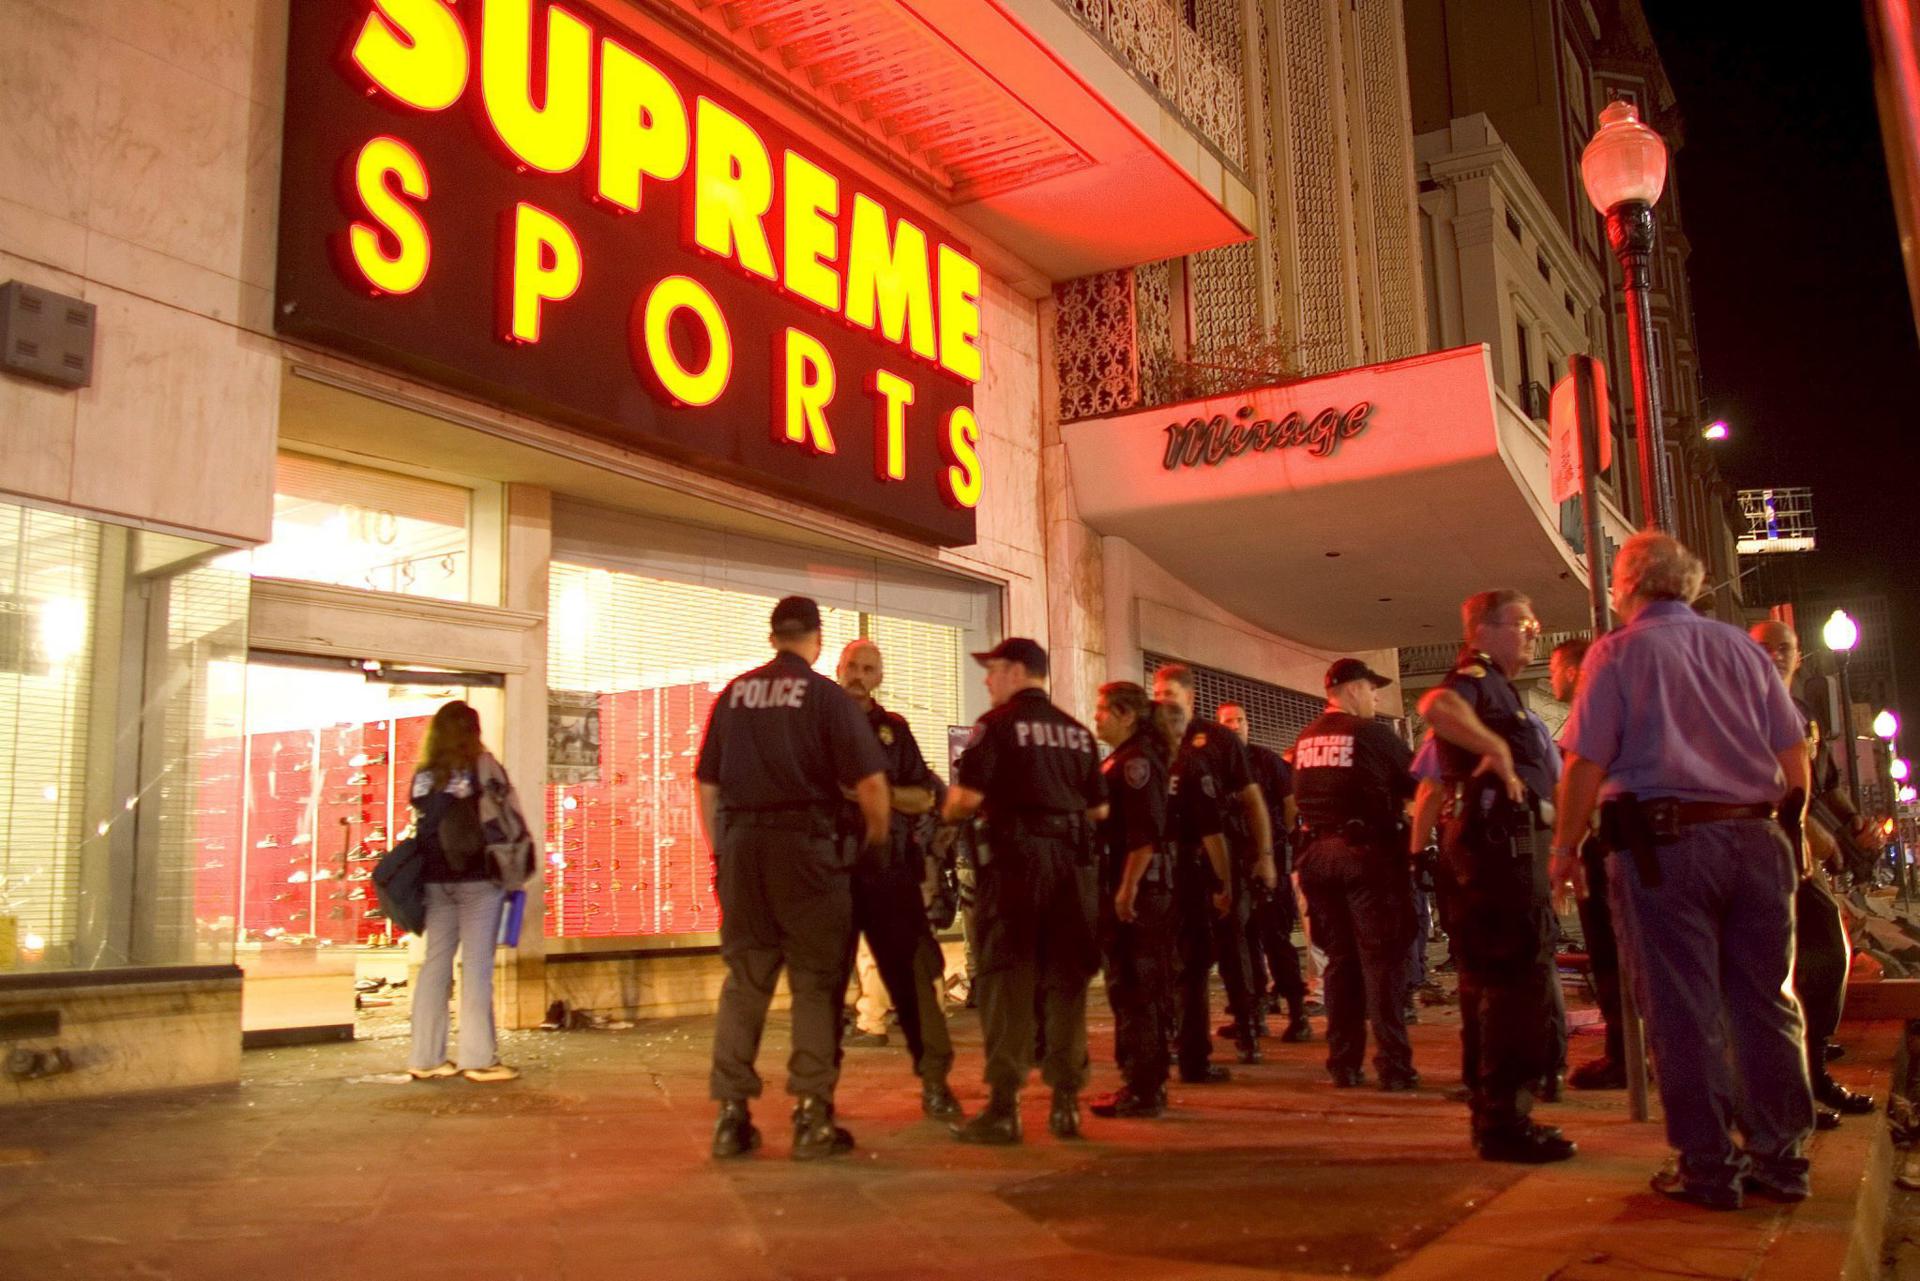 Fotogtafía de archivo de policías estadounidenses que vigilan fuera de unos almacenes luego de que unos 30 saqueadores entraron en la tienda y robaron mercancías. EFE/CHRIS LIVINGSTON
